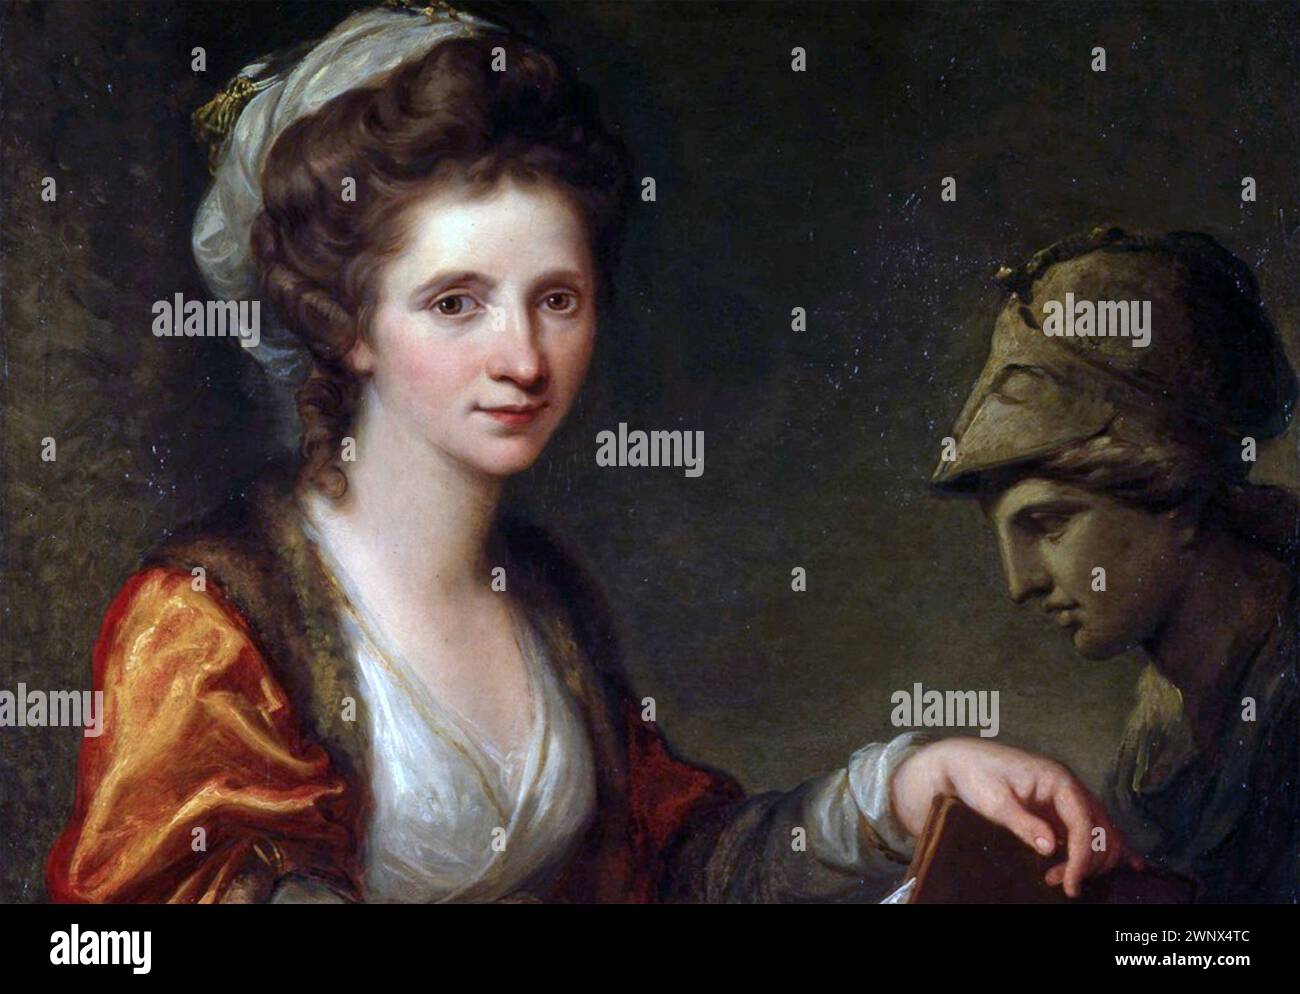 ANGELICA KAUFFMAN (1741–1807) Schweizer neoklassizistische Malerin. Teil ihres Selbstporträts mit Minerva, gemalt 1791 in Rom Stockfoto